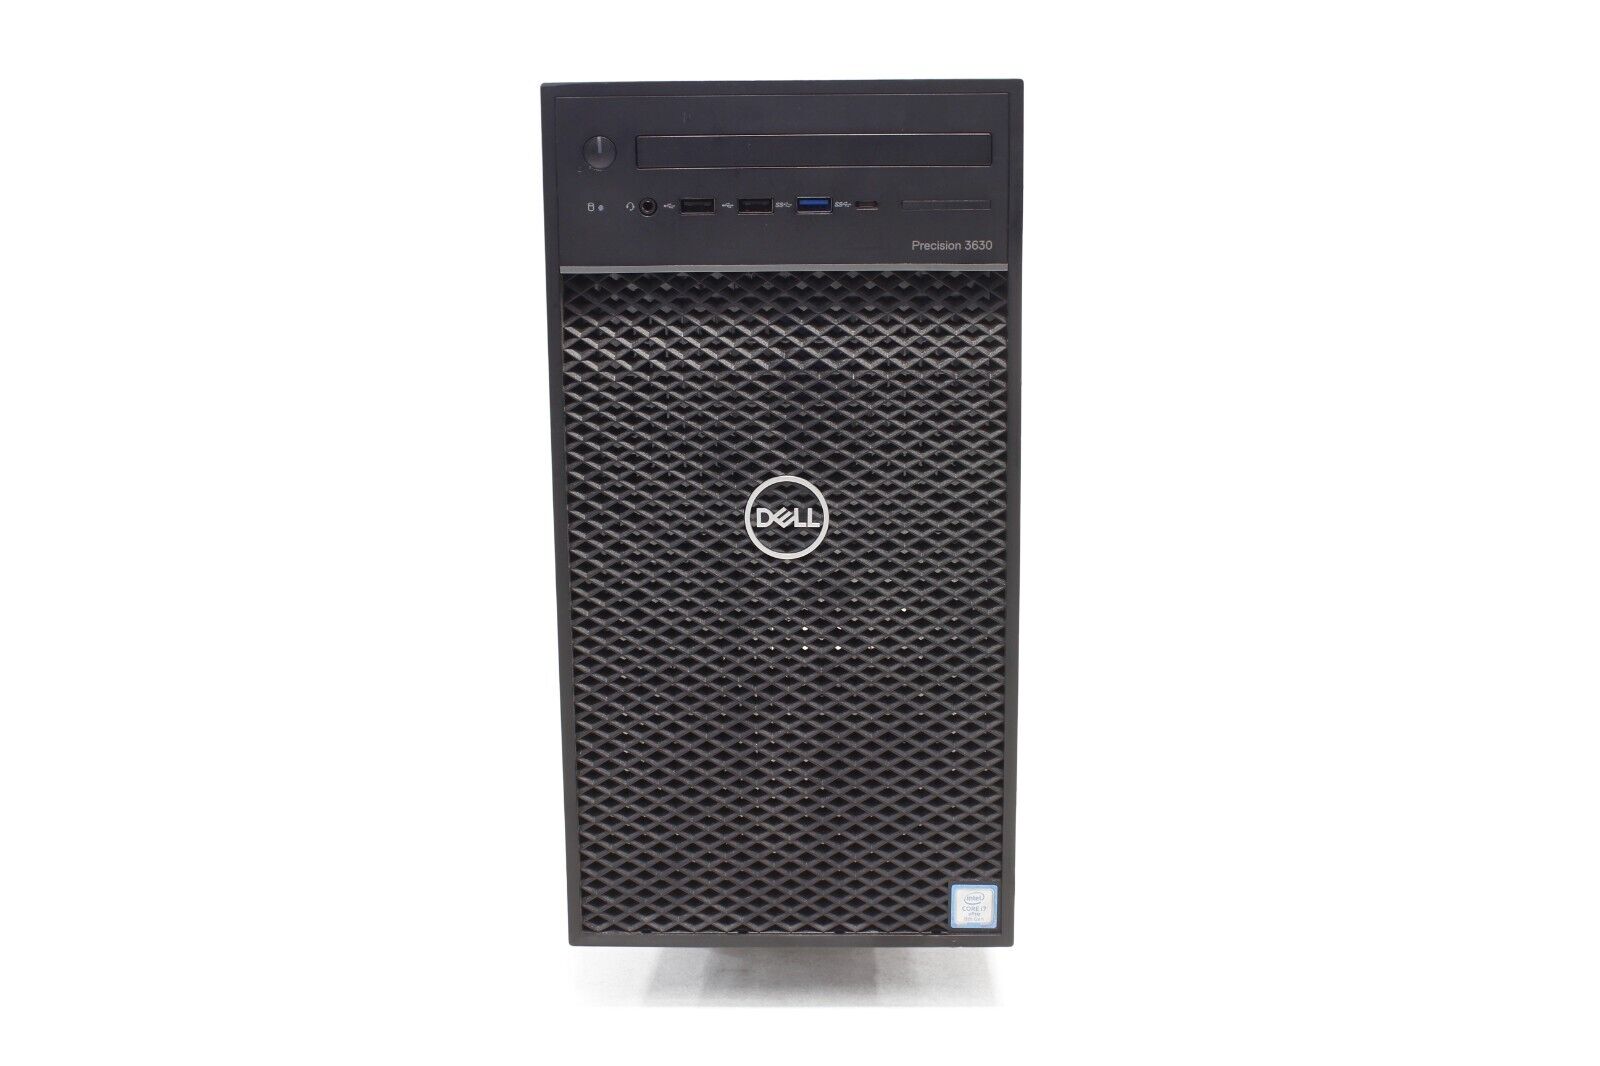 Dell Precision 3630 Tower Intel i7 16GB RAM 500GB SSD+1TB HDD USB Win 10 Desktop